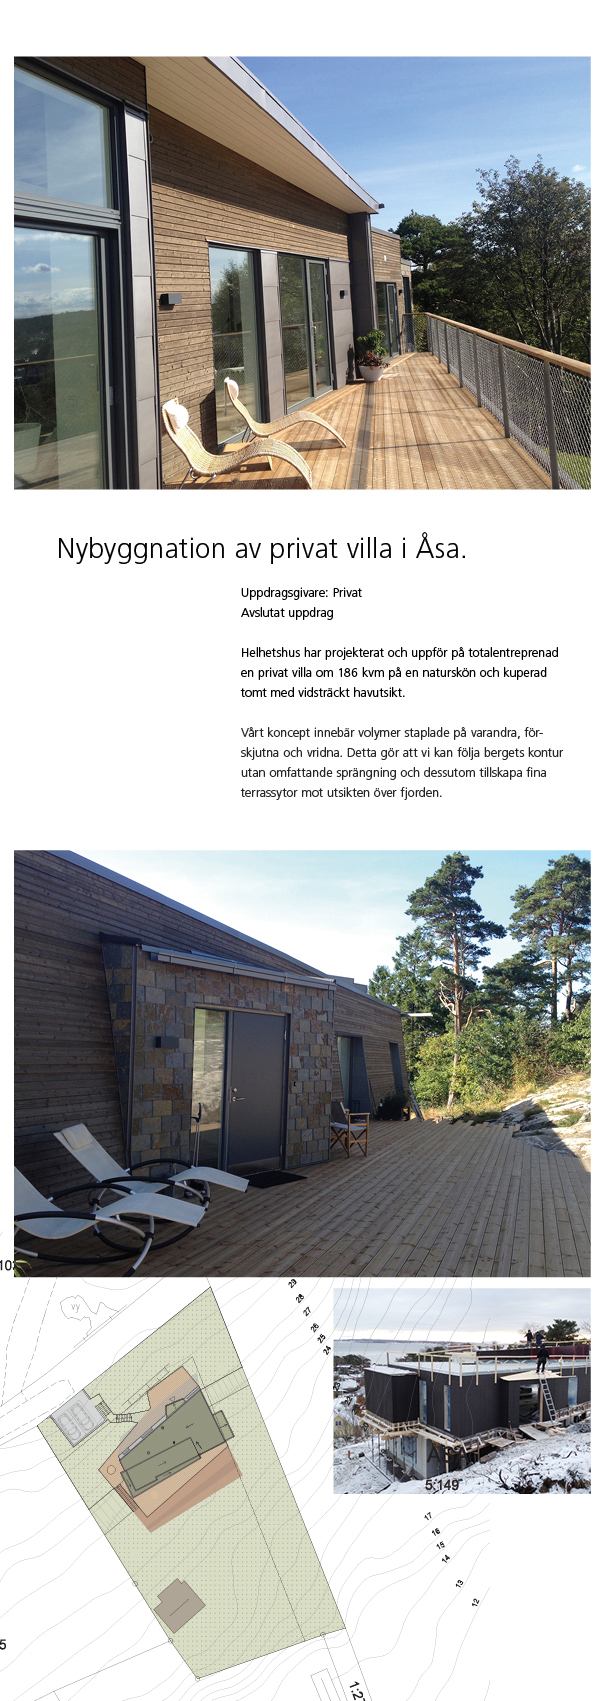 Helhetshus har projekterat och uppfört en privat villa om 186 kvm på en naturskön och kuperad tomt med vidsträckt havutsikt i Åsa.